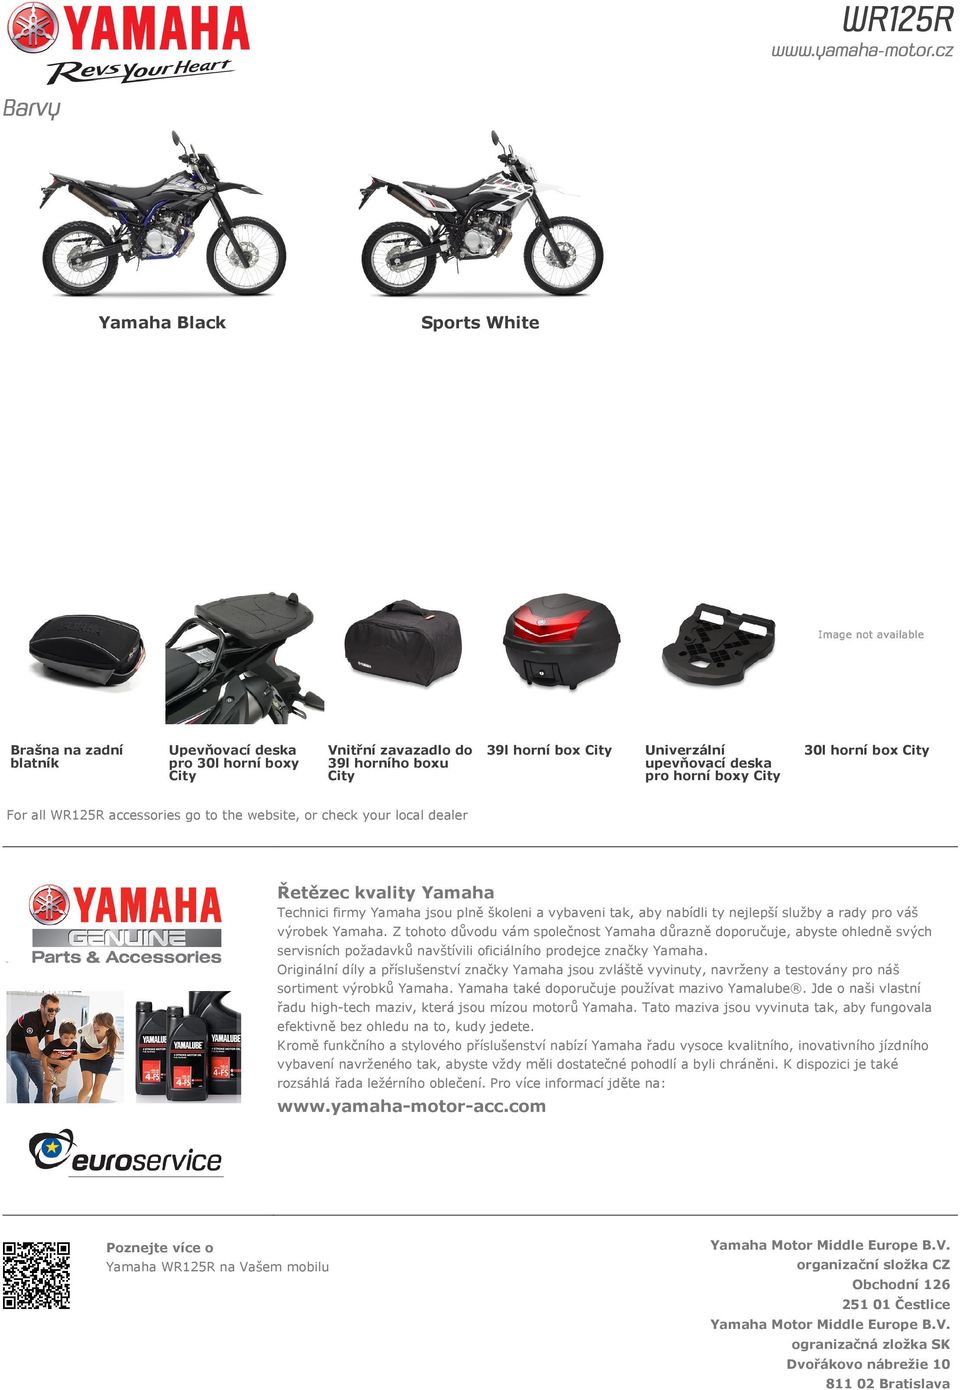 služby a rady pro váš výrobek Yamaha. Z tohoto důvodu vám společnost Yamaha důrazně doporučuje, abyste ohledně svých servisních požadavků navštívili oficiálního prodejce značky Yamaha.